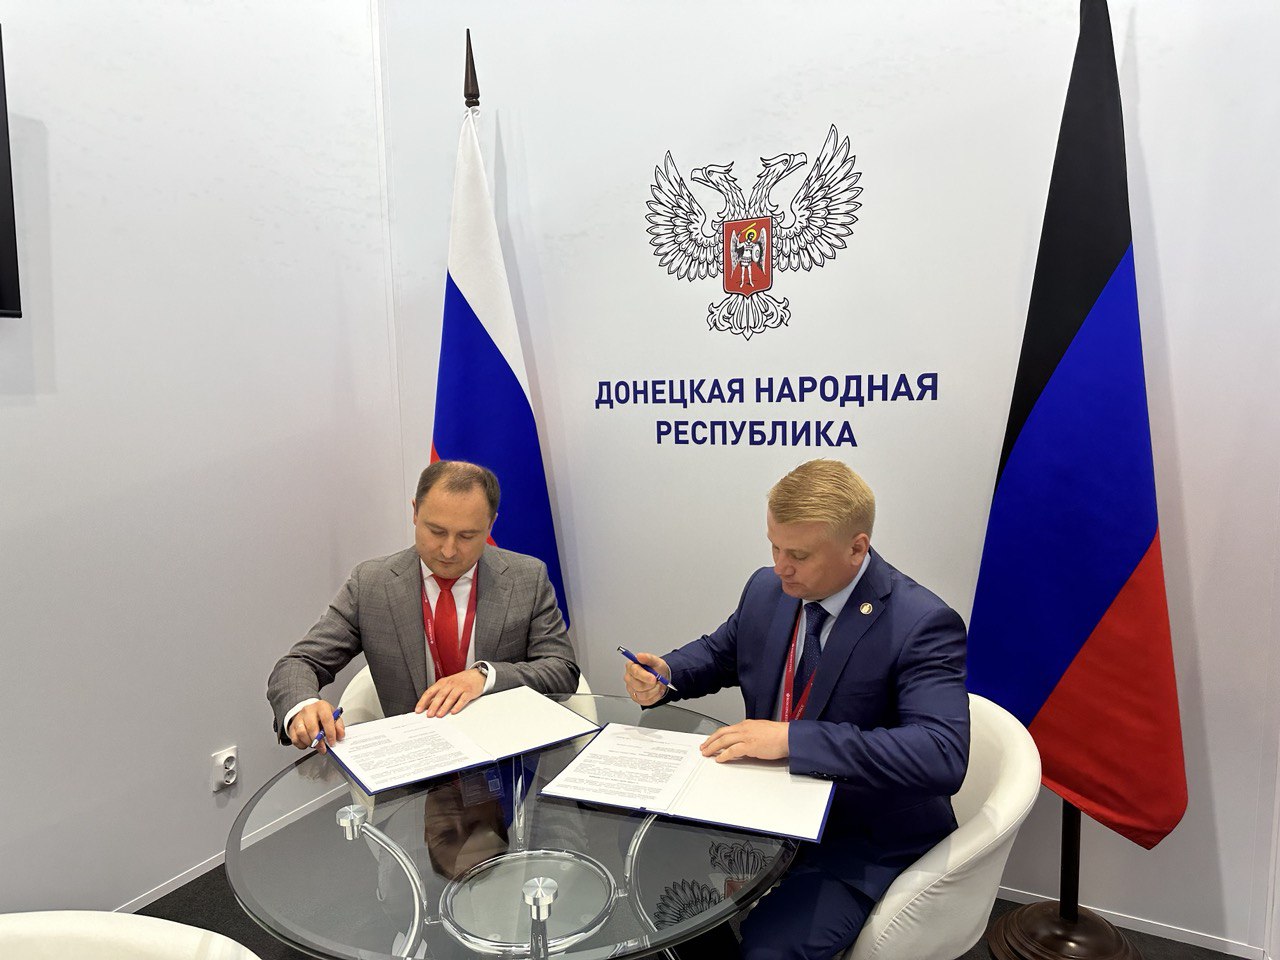 Подписание соглашения о партнерстве с ДНР.